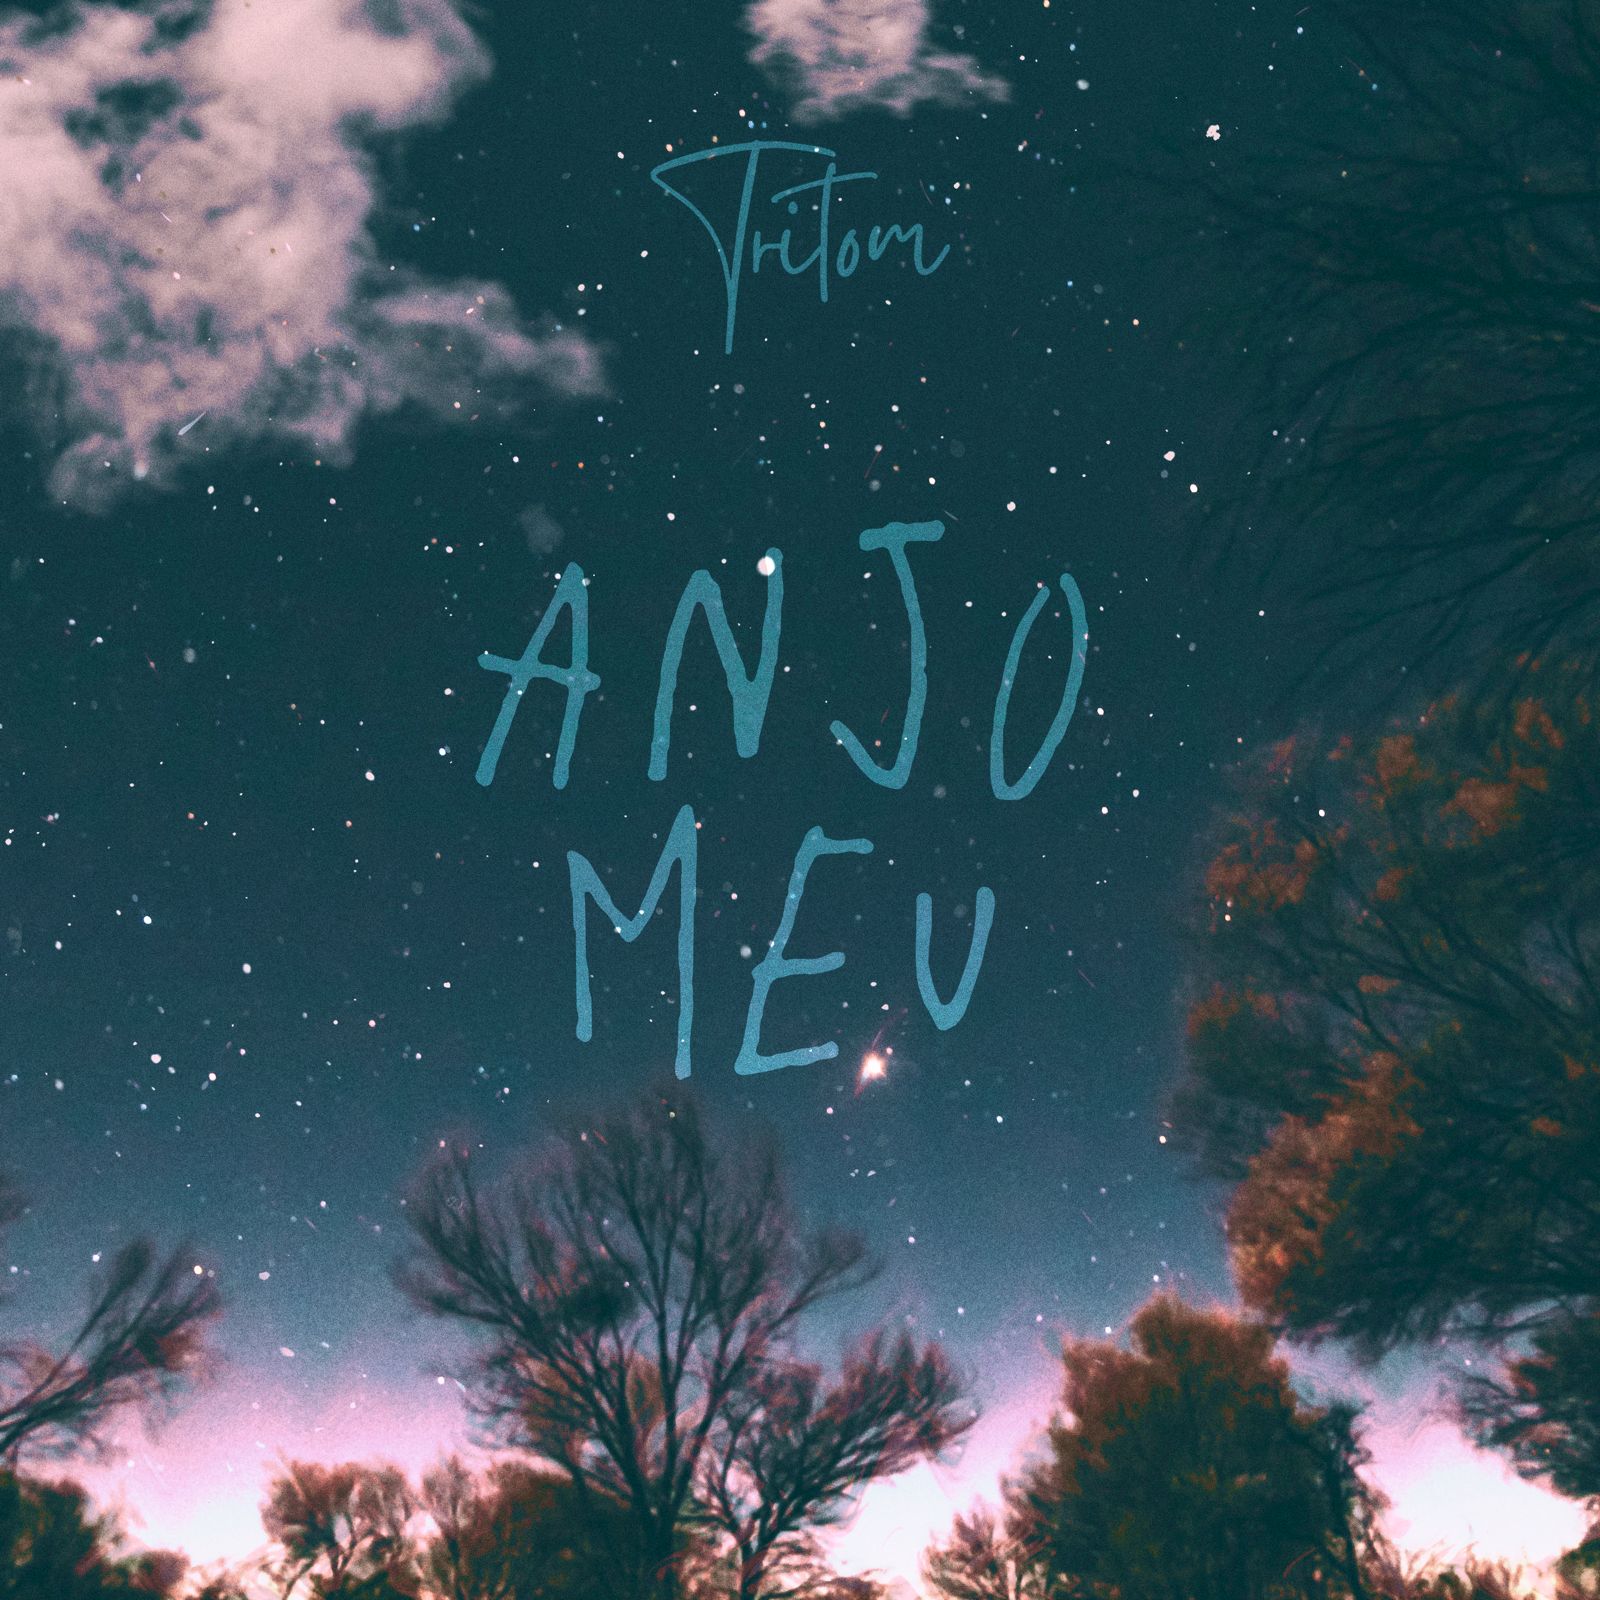 Tritom lança novo single ‘’Anjo Meu’’